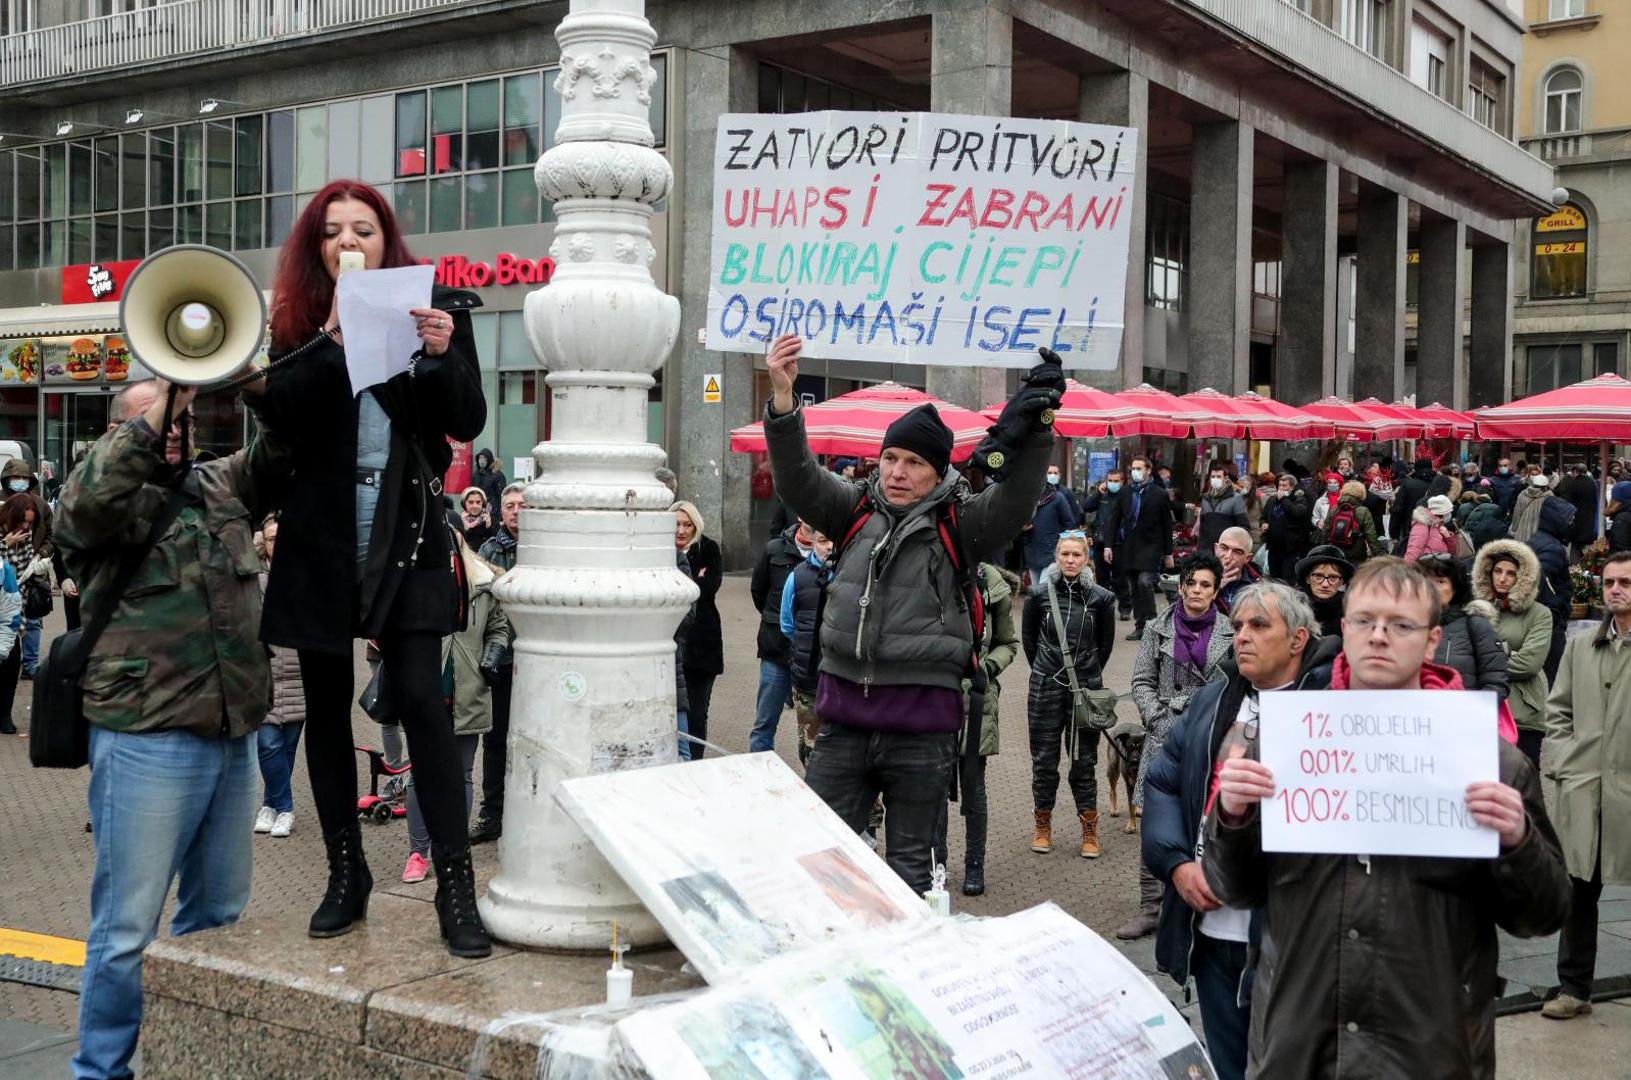 28.11.2020., Zagreb - Na Trgu bana Josipa Jelacica poceo je prosvjed na koji je pozvala Inicijativa Prava i slobode zbog novih mjera. 
Photo: Sanjin Strukic/PIXSELL